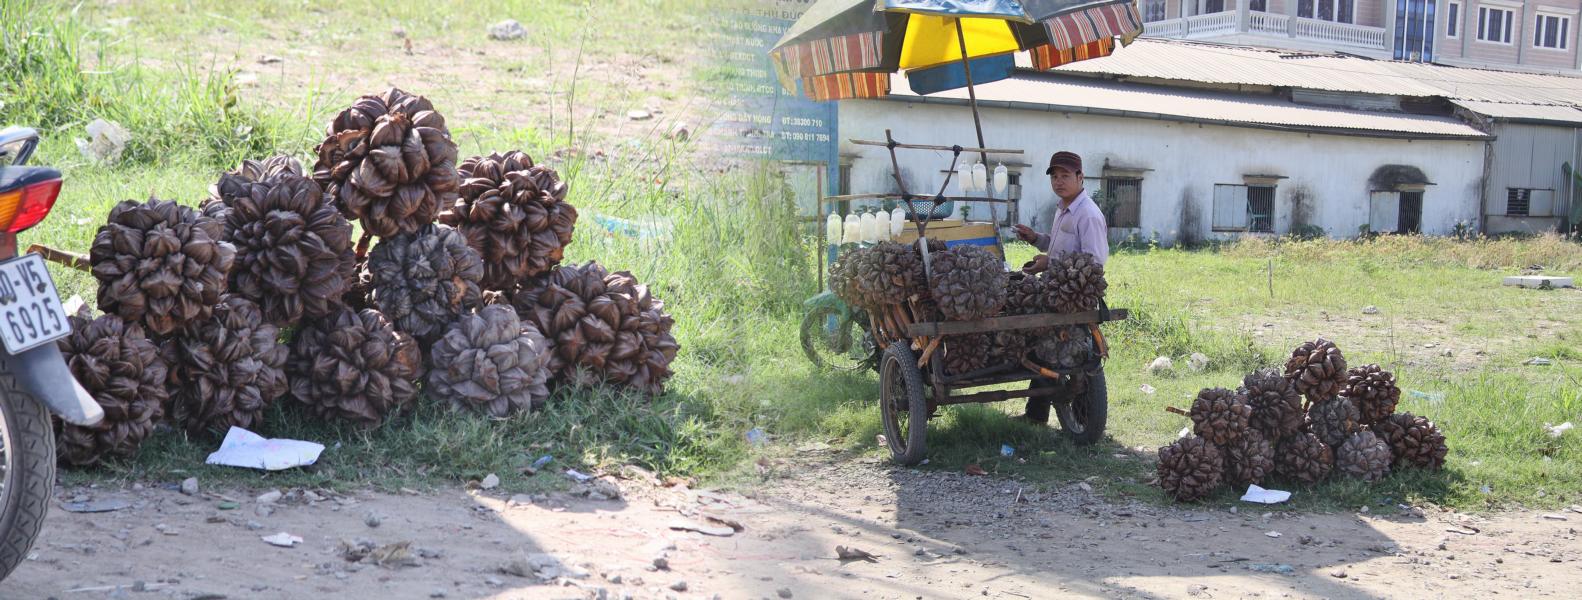 Dieser Händler hat es geschafft, die riesigen Wassernüsse an den Straßenrand zu bringen, um sie zu verkaufen.